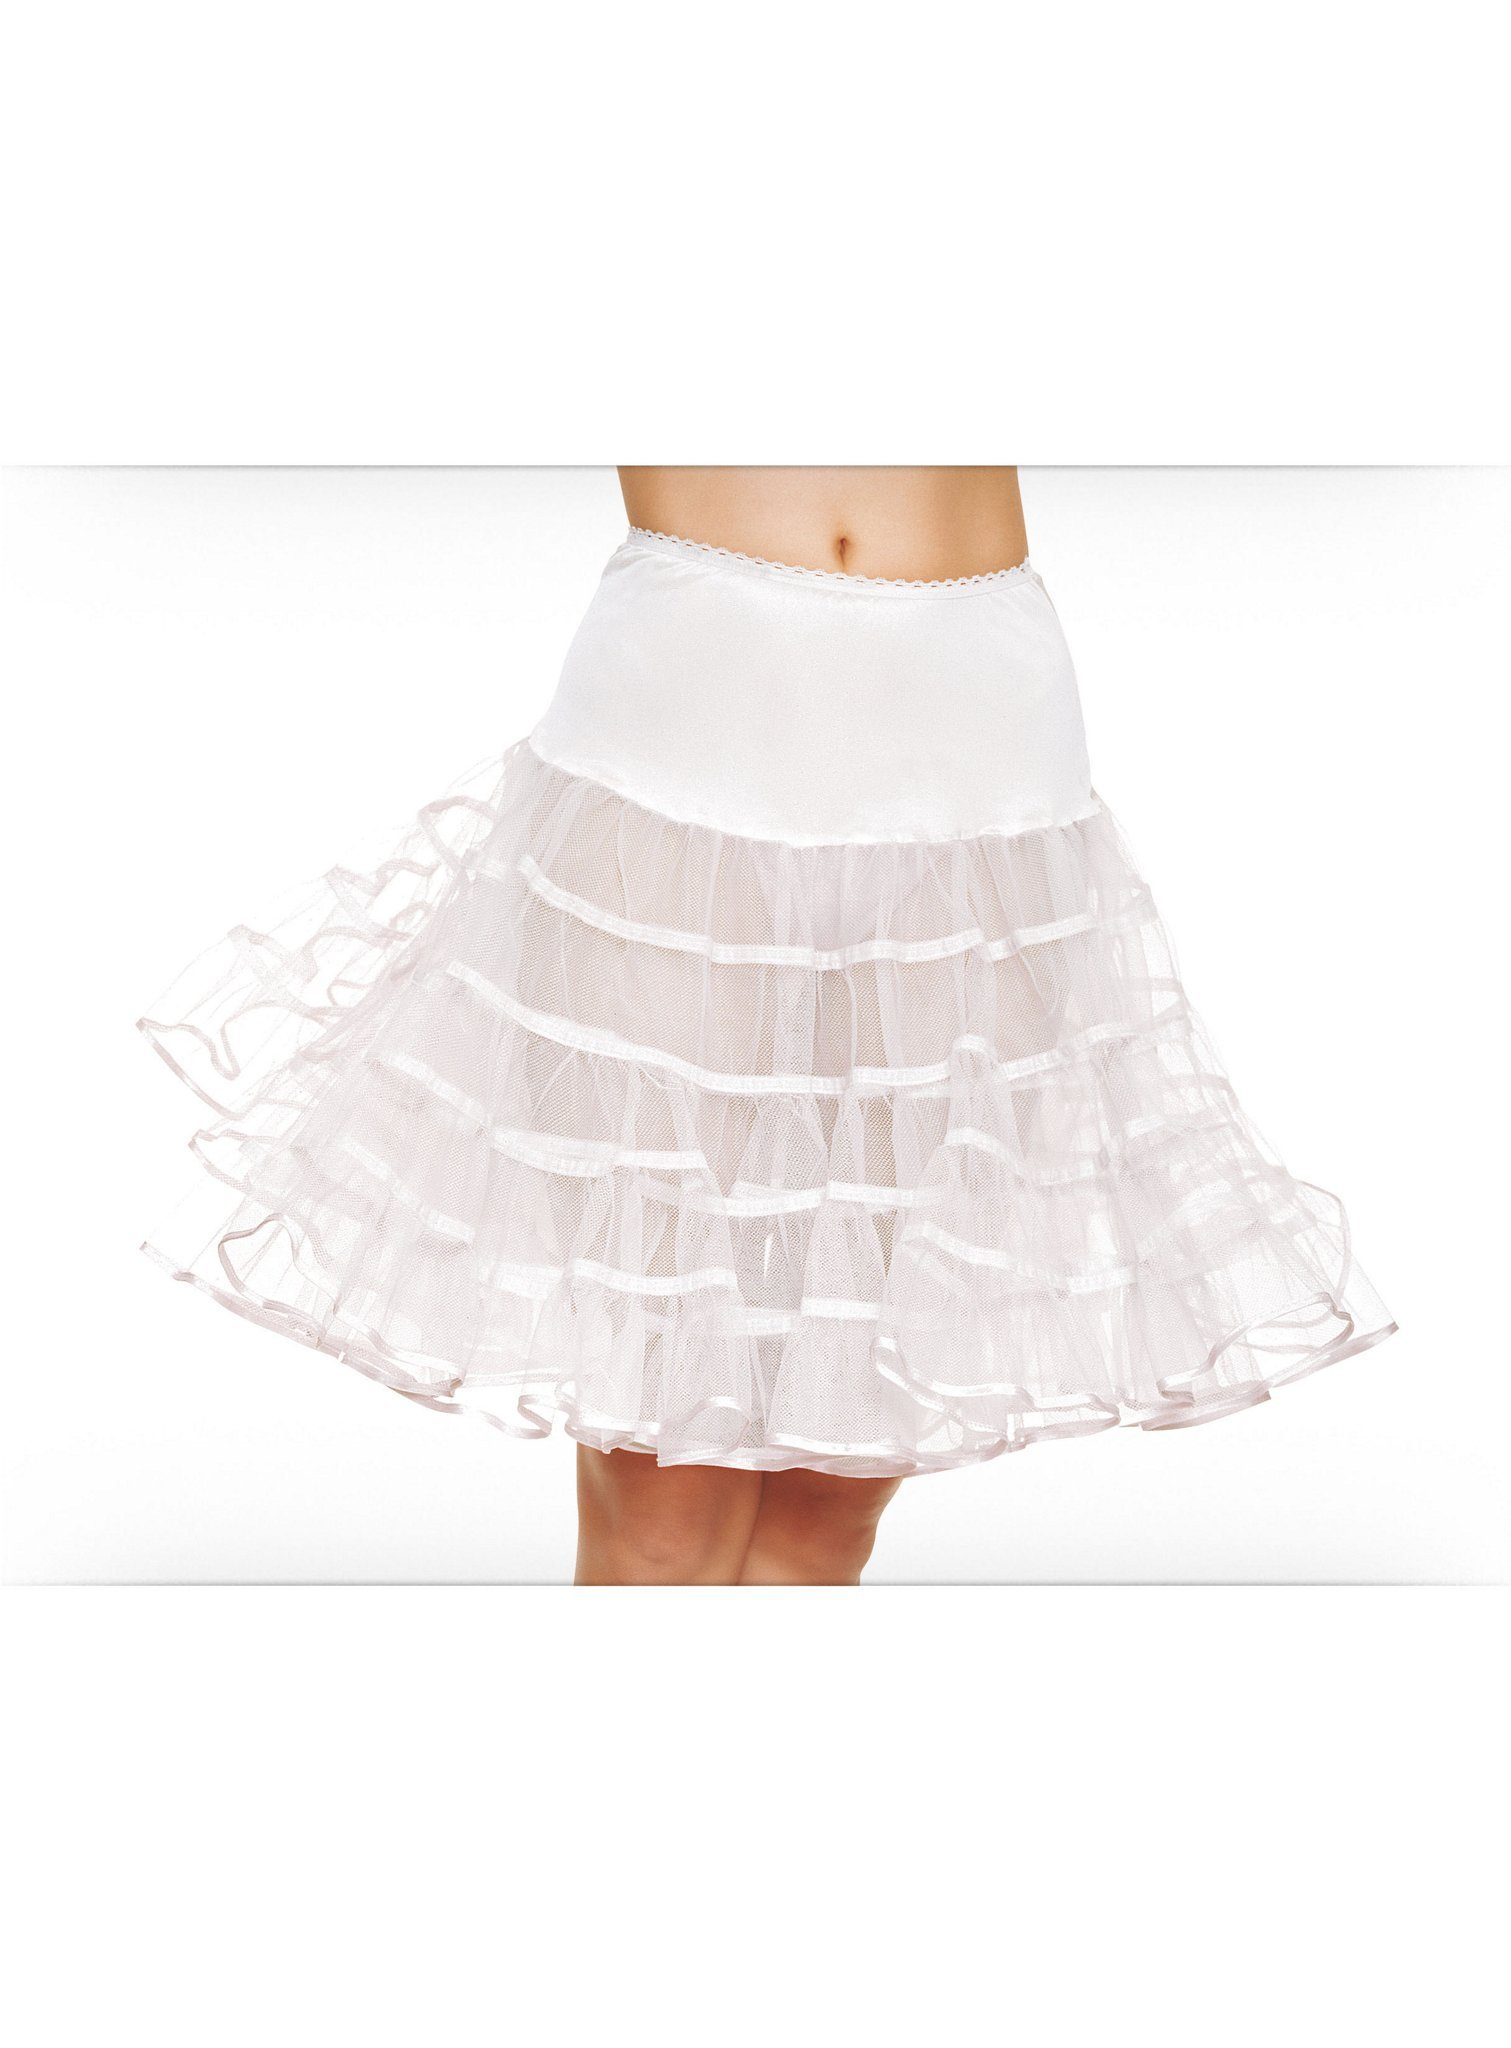 Leg Avenue Kostüm Petticoat mittellang weiß, 40